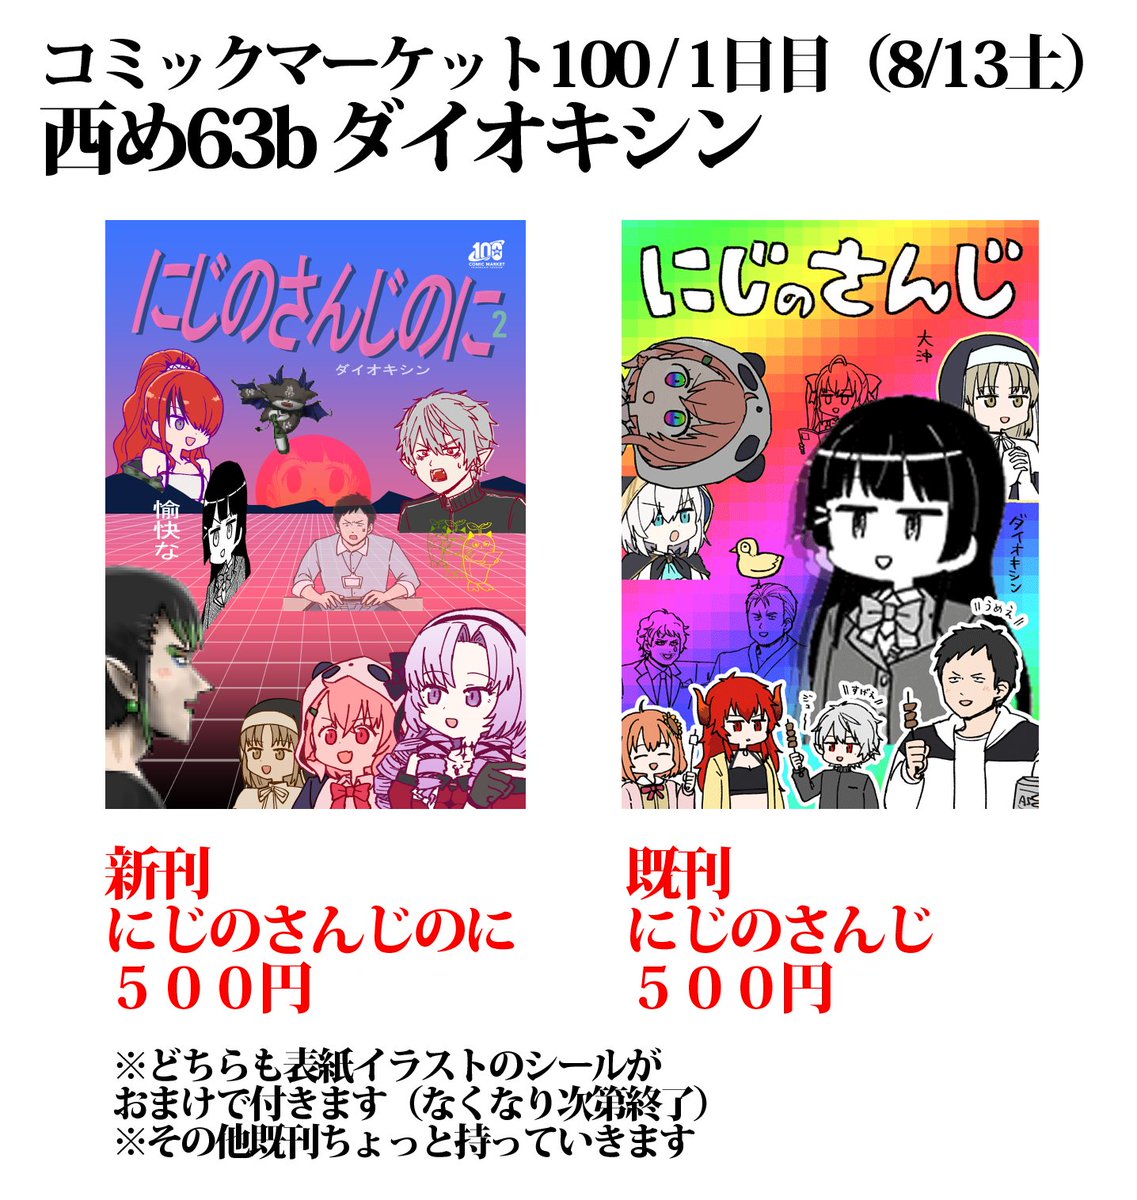 コミックマーケット100
1日目(8/13土)西め63bダイオキシン
夏コミ情報です 